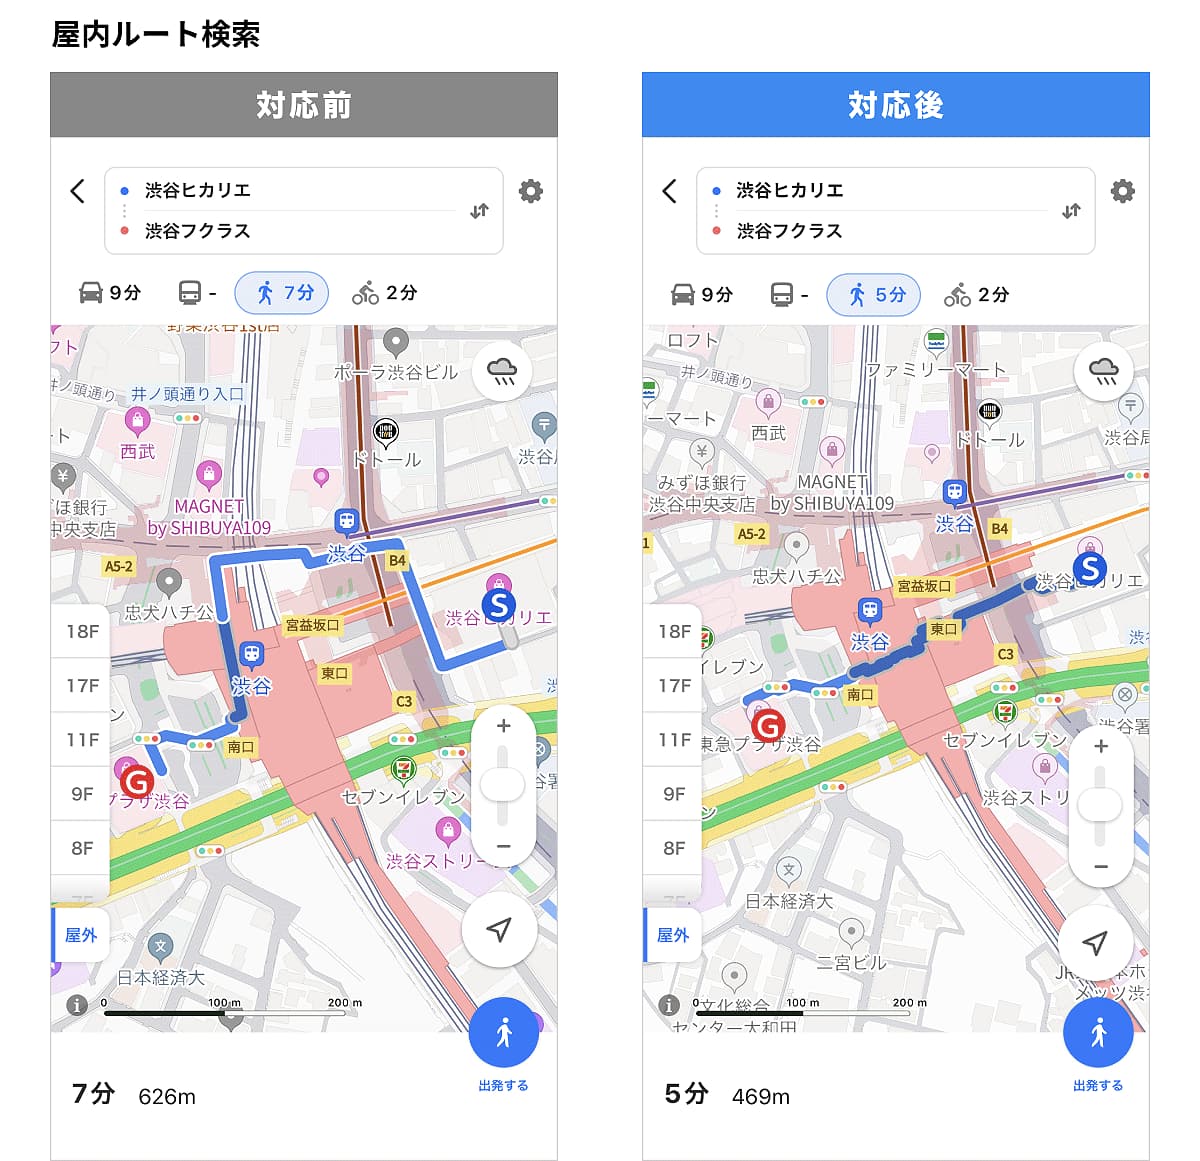 「Yahoo! MAP」、渋谷駅と周辺施設の屋内ルート検索を提供